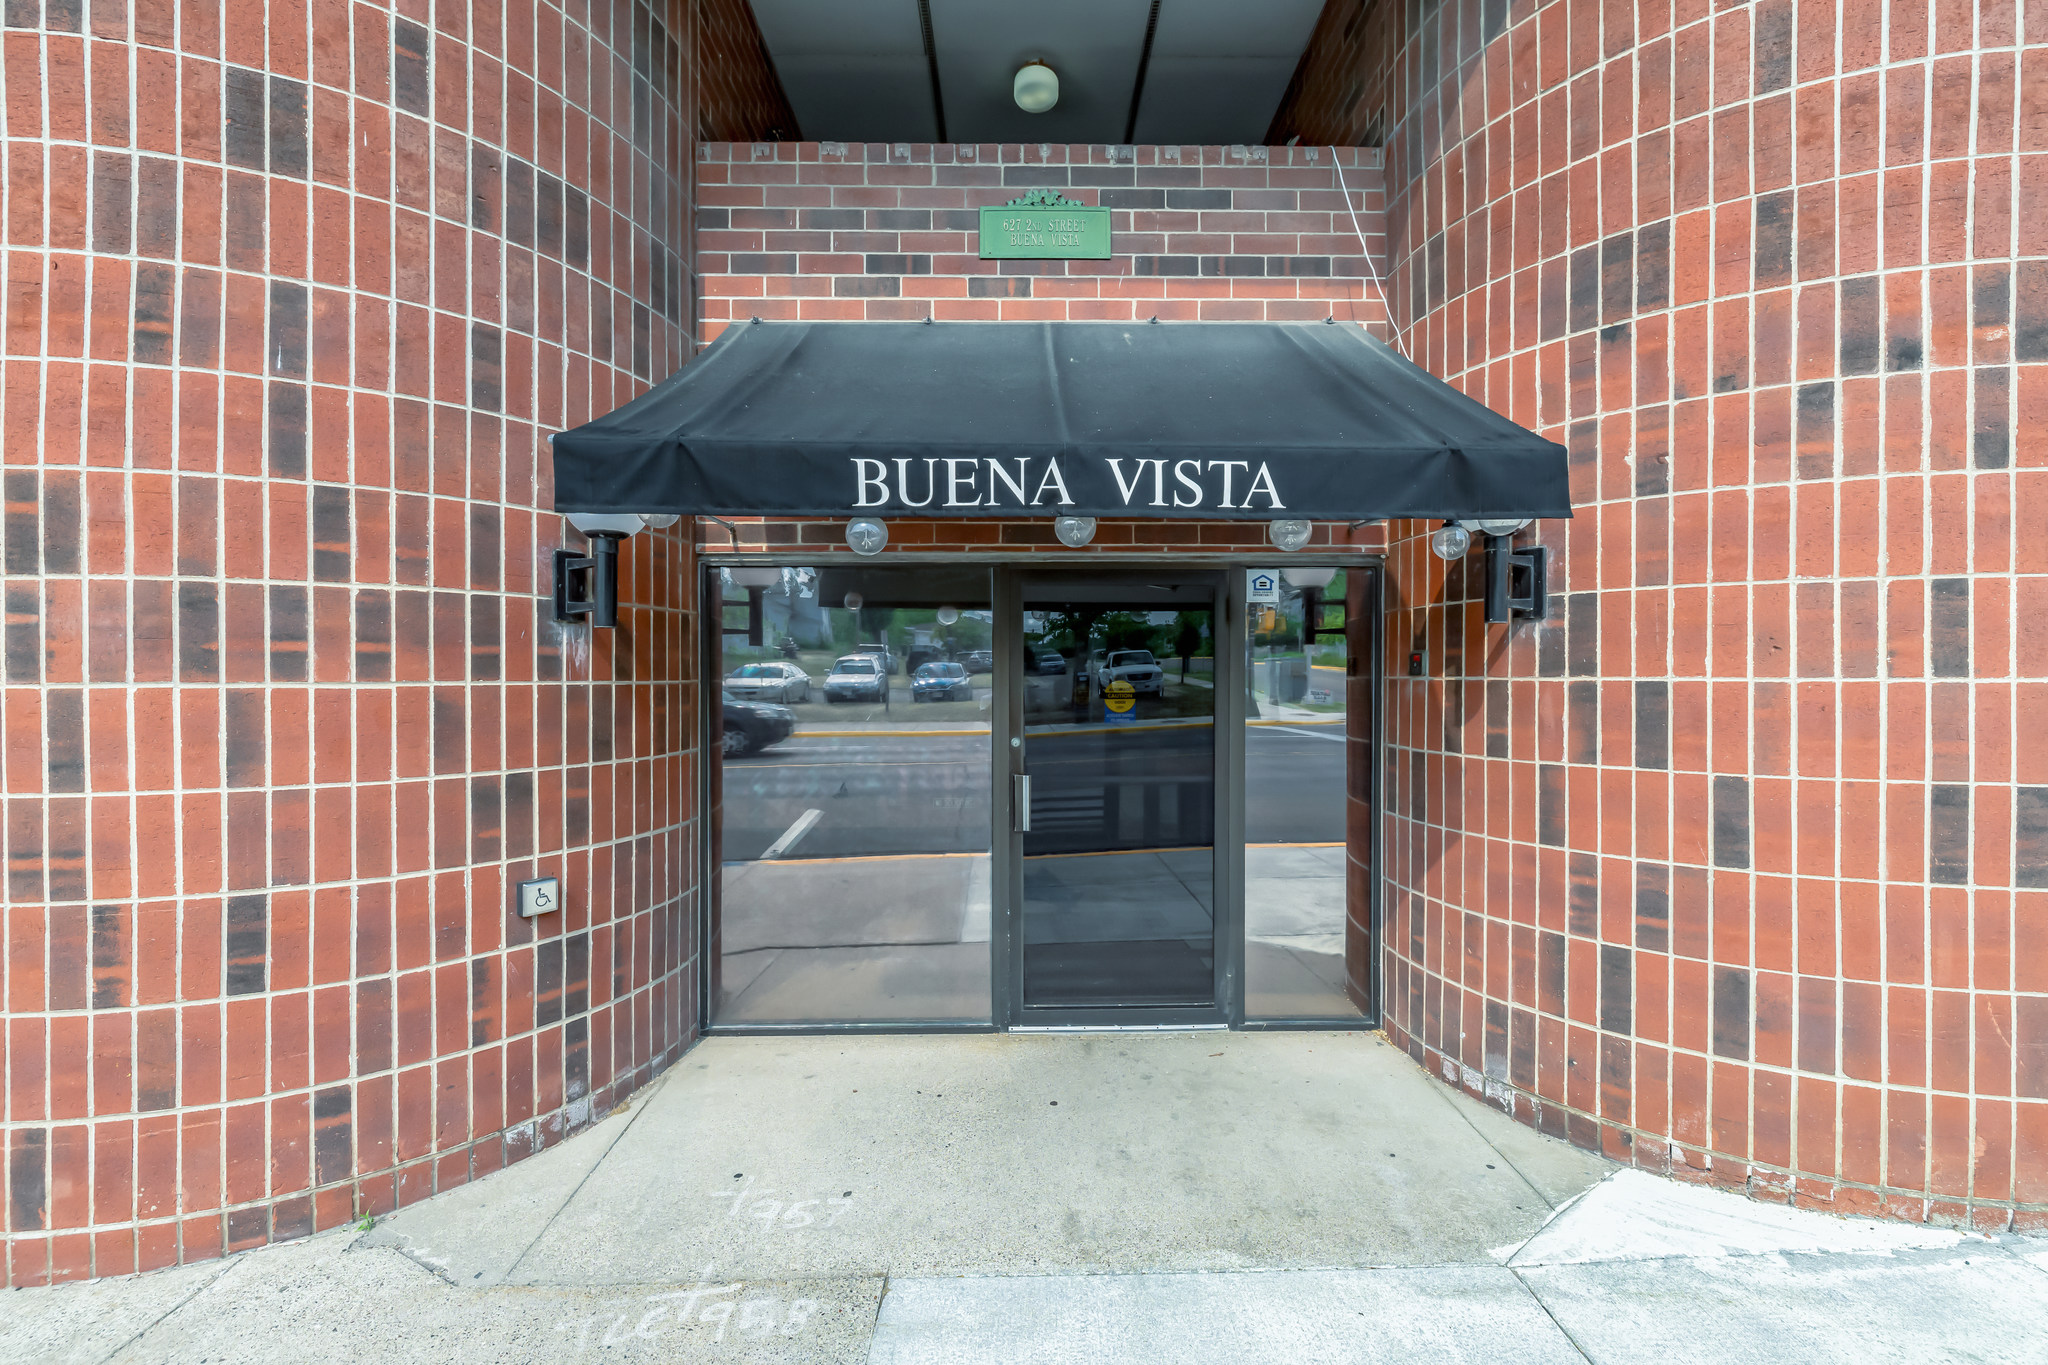 Buena Vista Apartments Affordable/ Public Housing